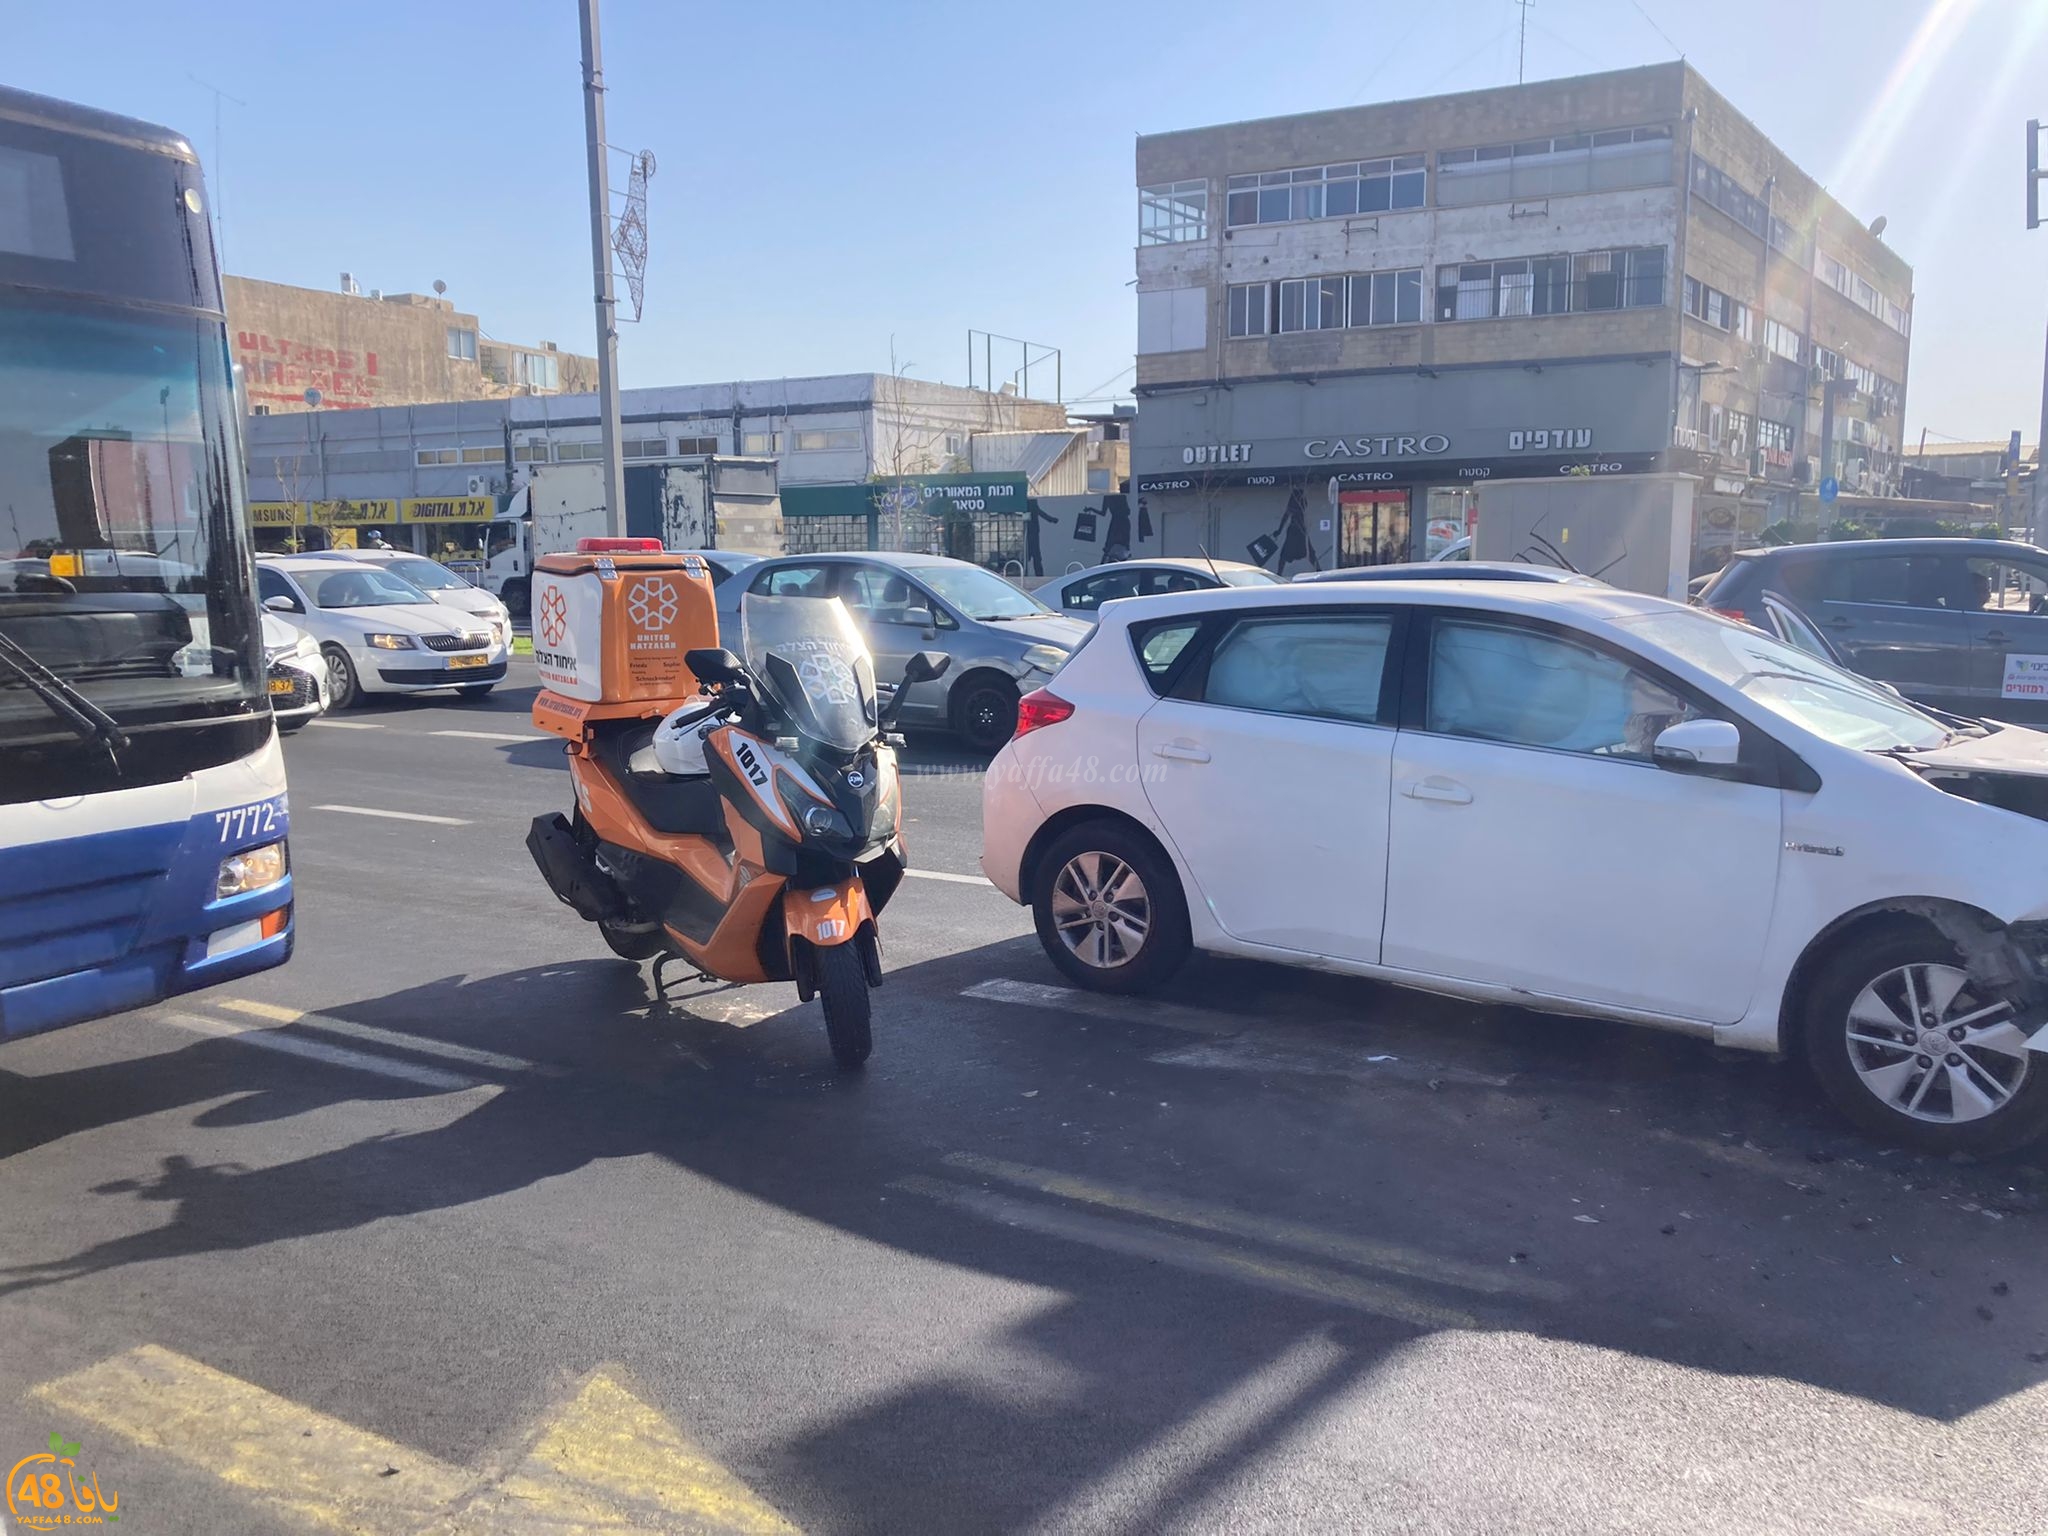  يافا: اصابة طفيفة لشخصين بحادث طرق بين مركبتين 